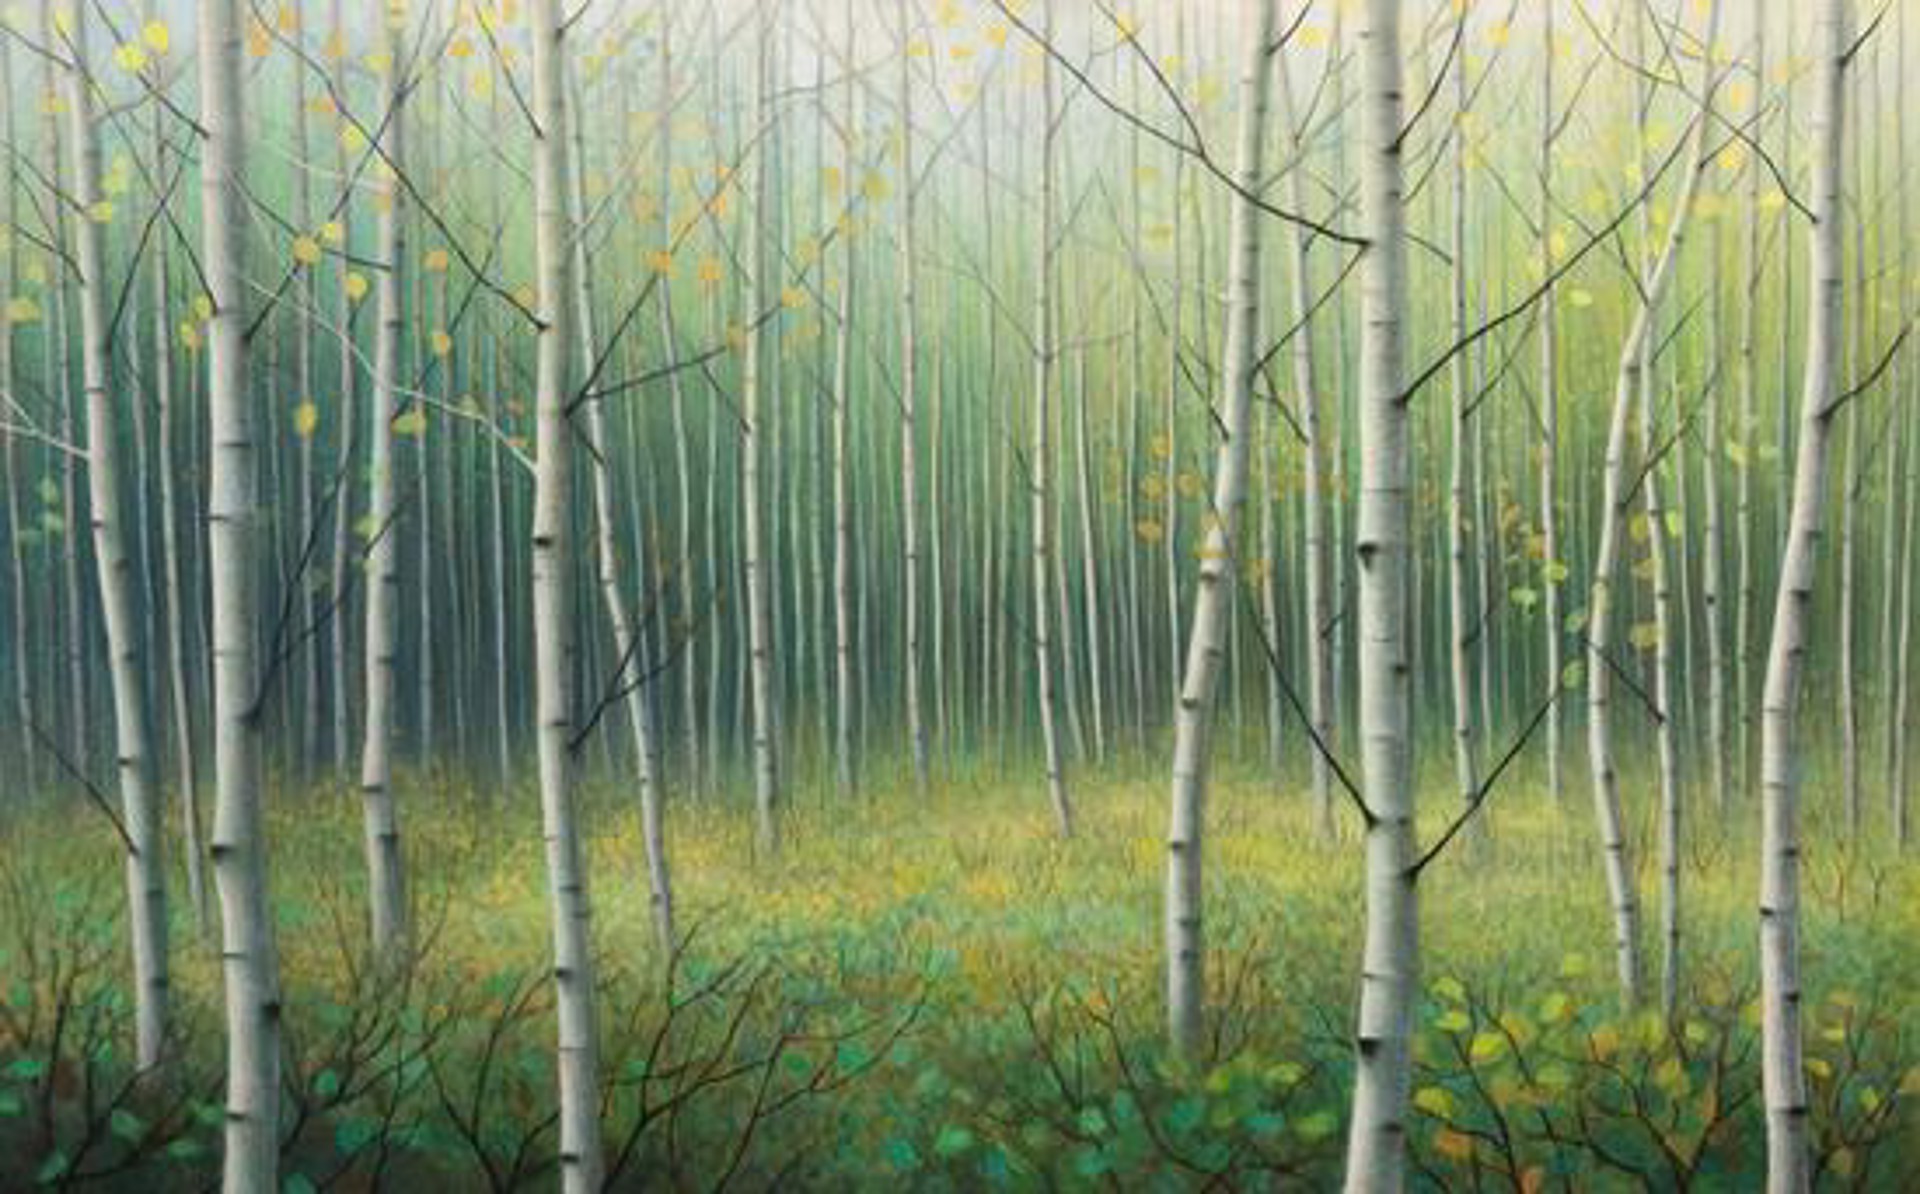 Summer Poplars by Debbie Wozniak-Bonk